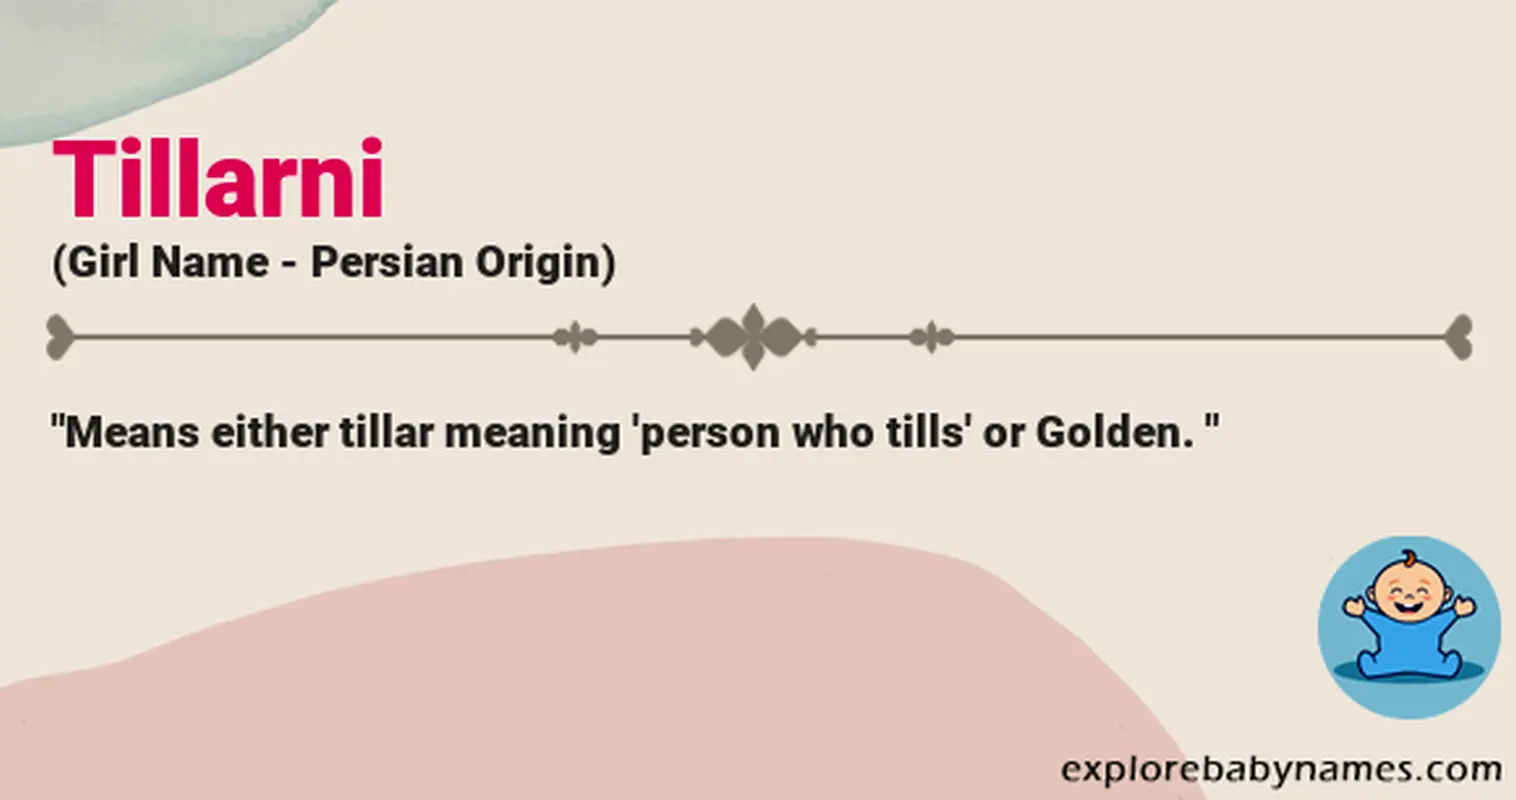 Meaning of Tillarni